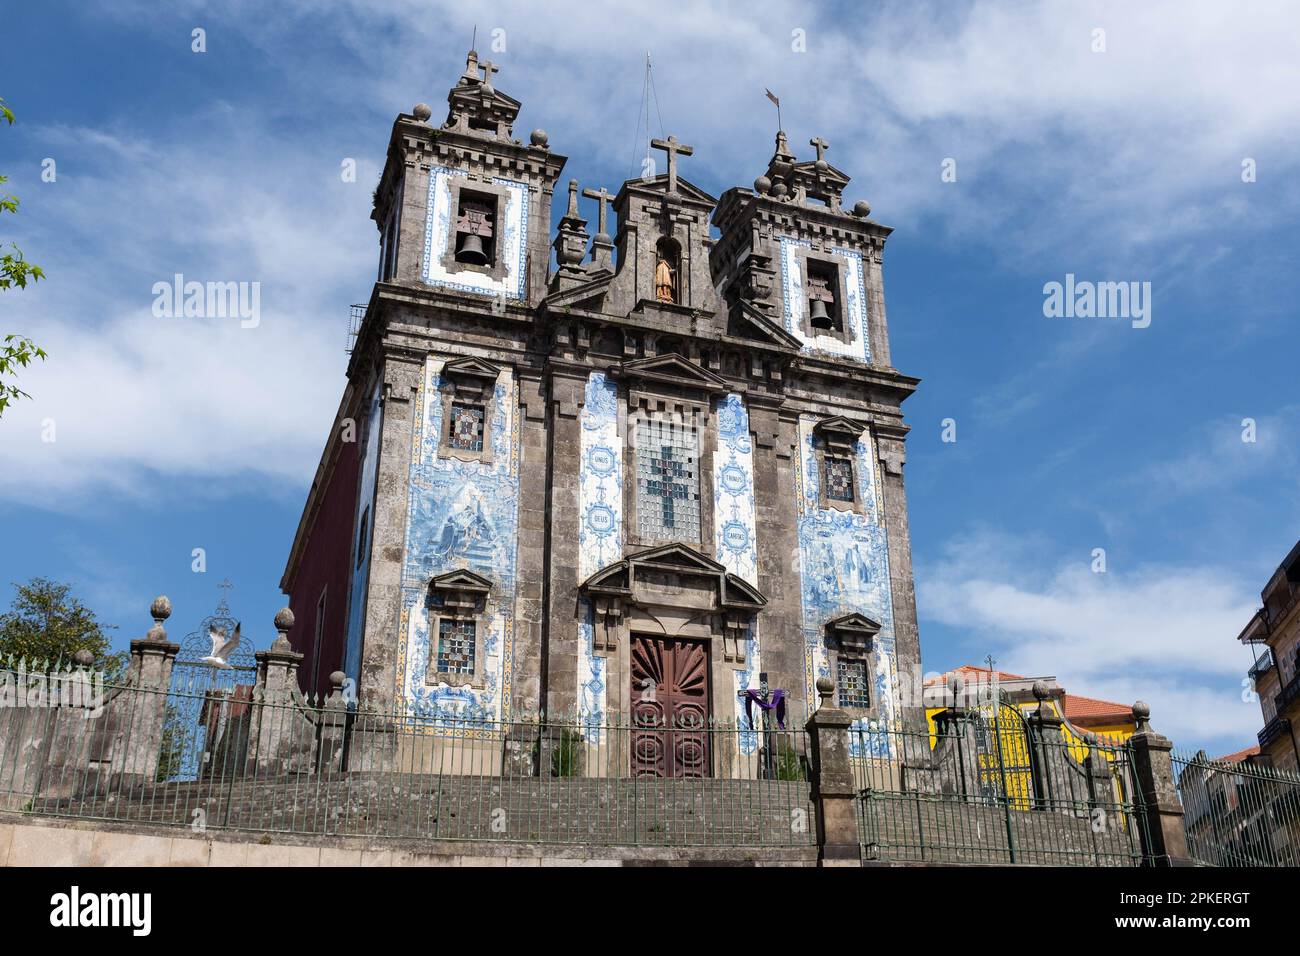 Porto, Portugal Banque D'Images